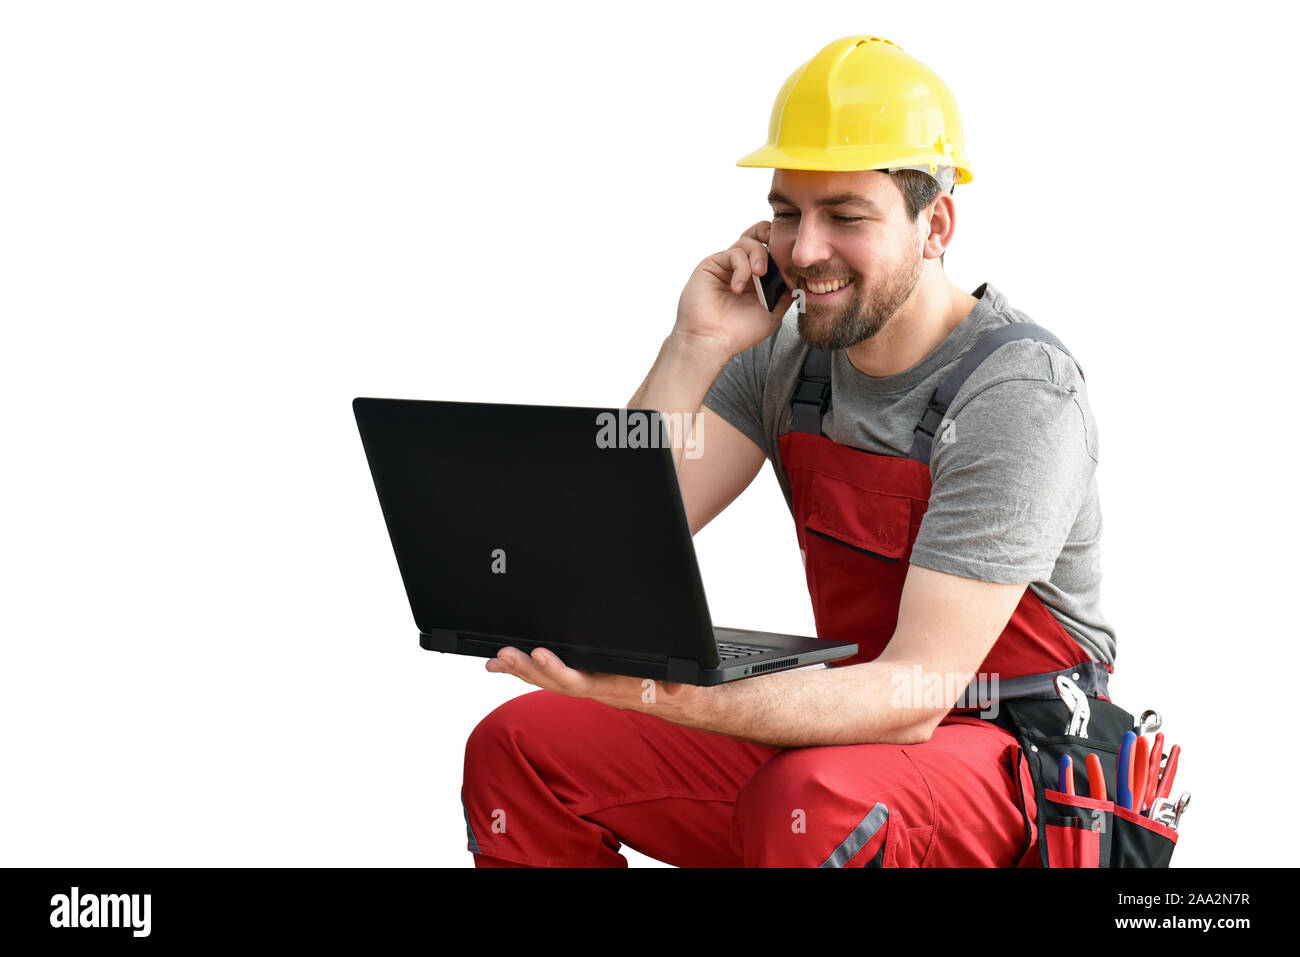 Customer service com Handwerker - Arbeitnehmer mit Telefon und Notebook auf der Baustelle/weißer Hintergrund Stockfoto